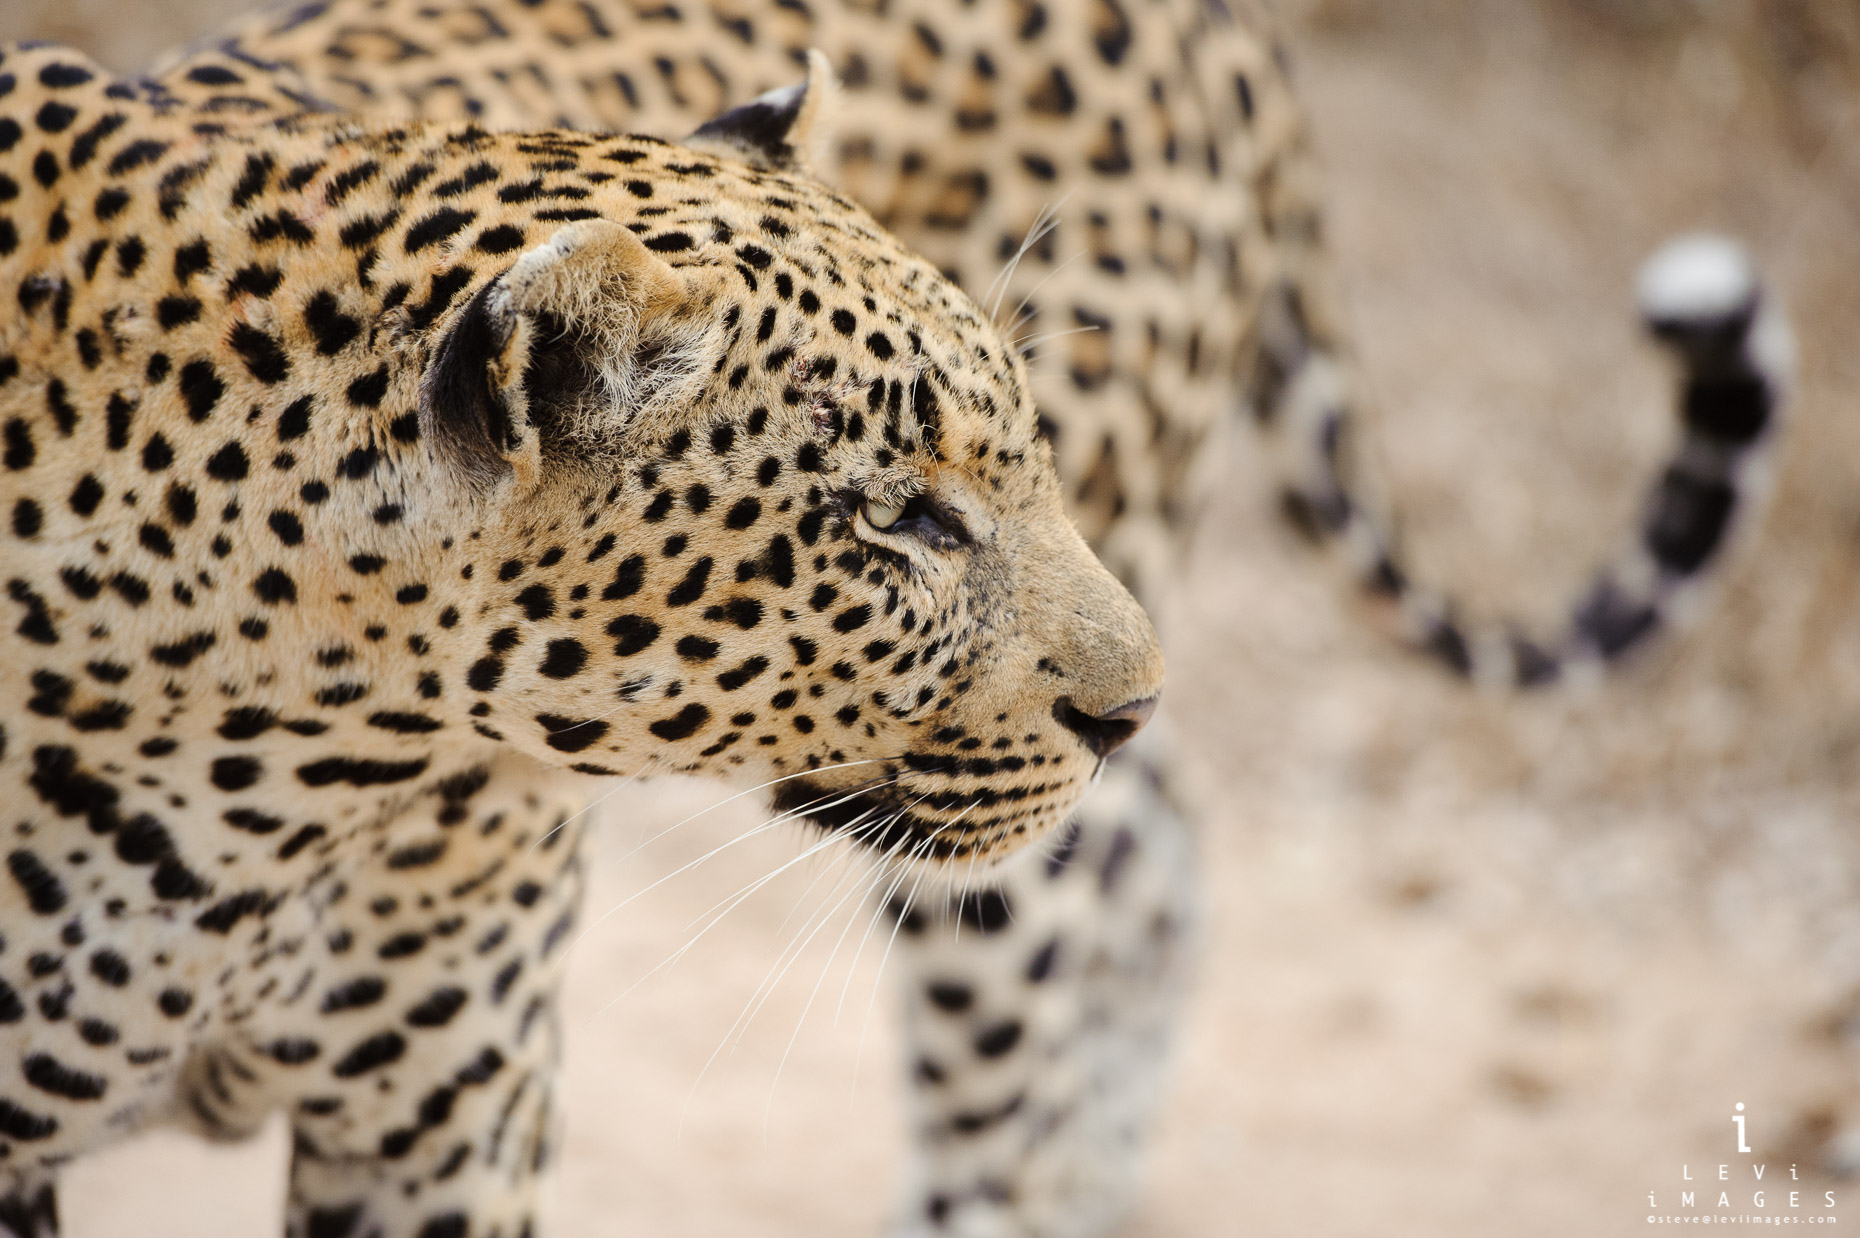 Leopard (Panthera pardus) and tail, Okavango Delta, Botswana